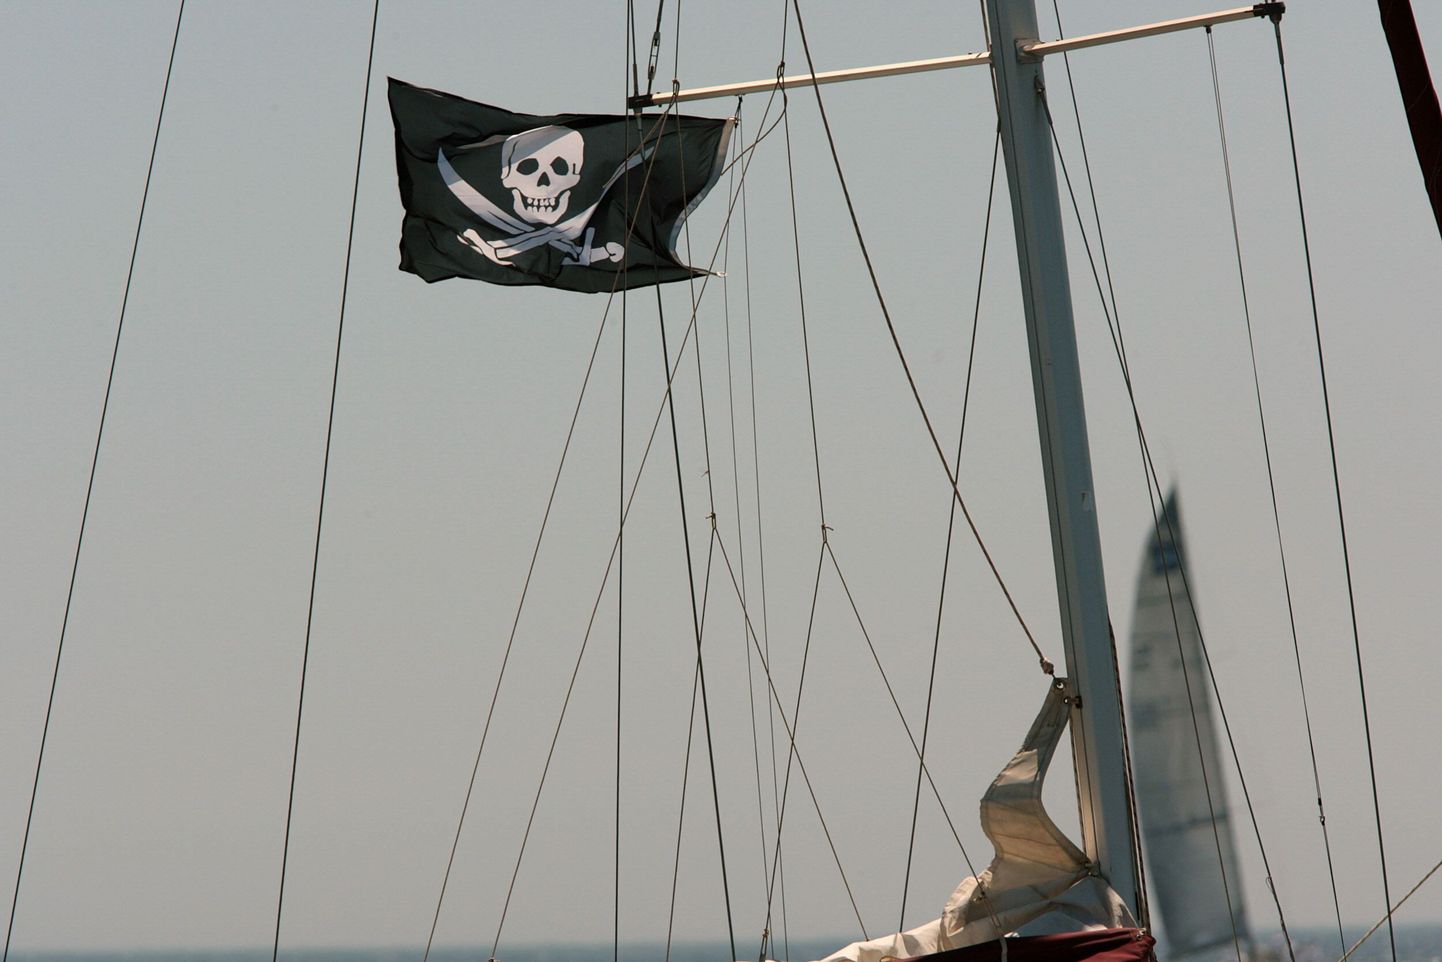 Somaalia piraatid kaaperdasid järjekordse kaubalaeva.